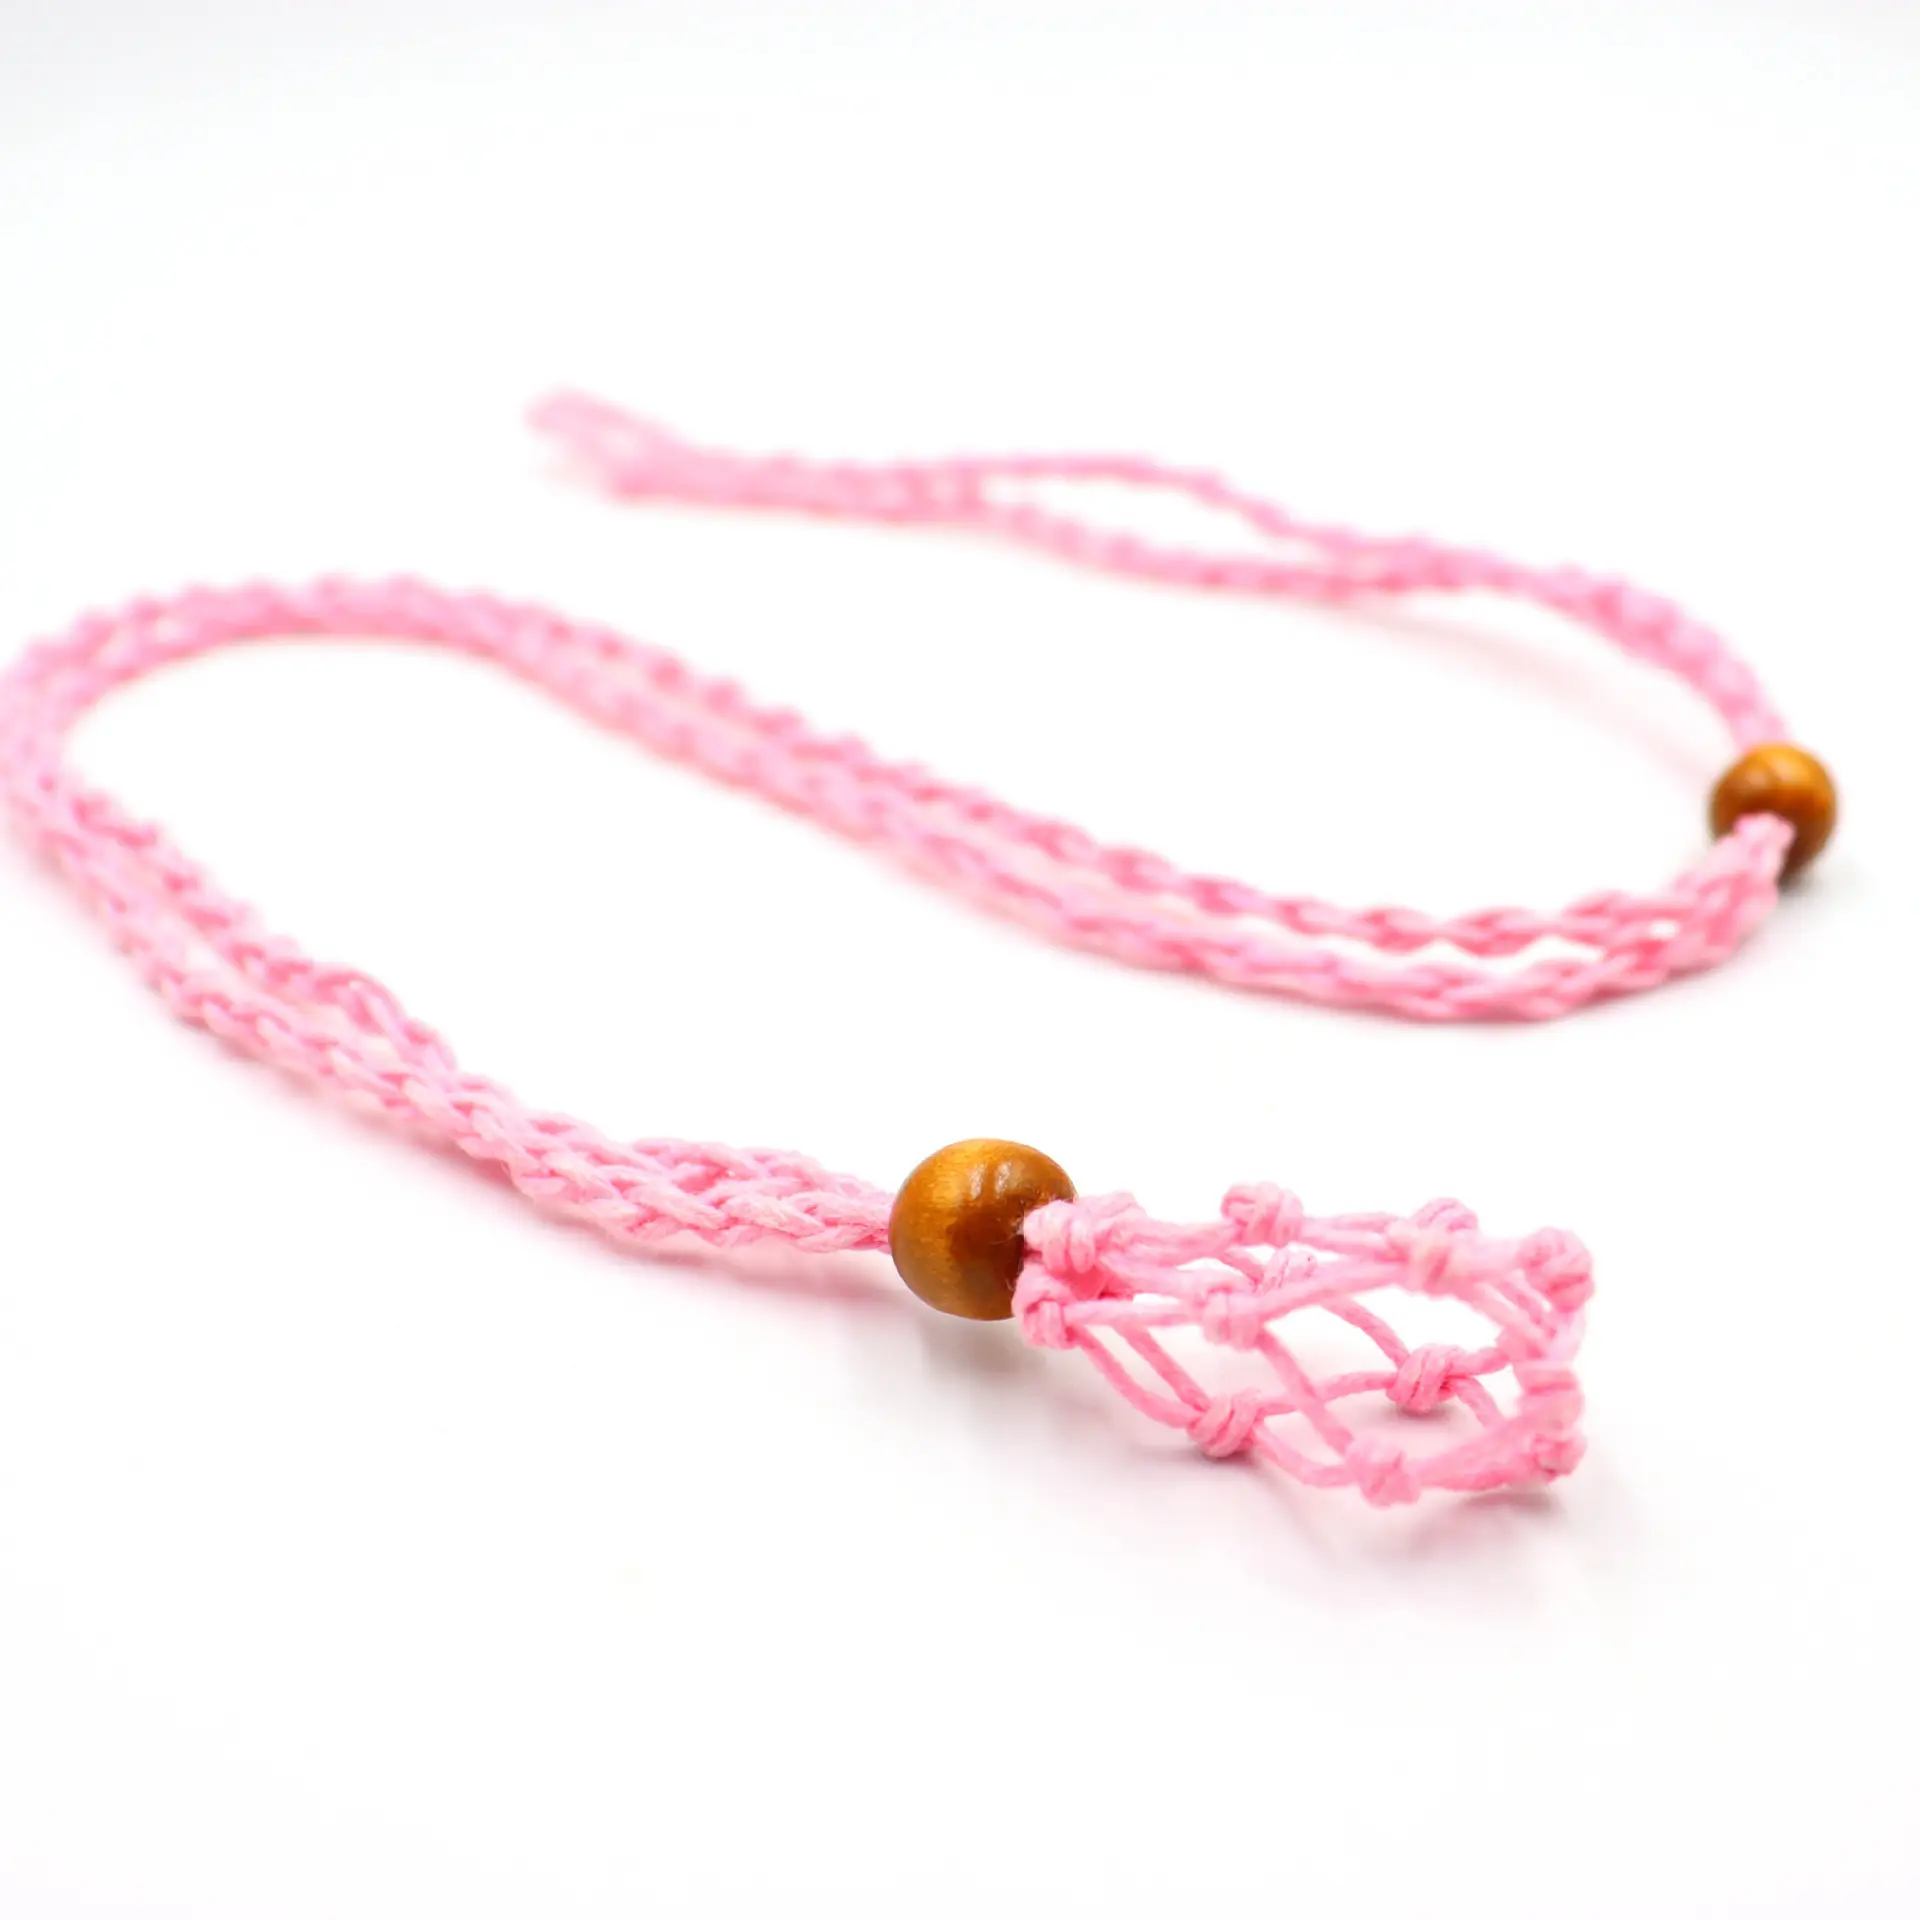 Vintage-Stil Naturstein Wachs Seil Netz Tasche Halskette handgefertigtes Netz Flechten Anhänger Halskette Unisex